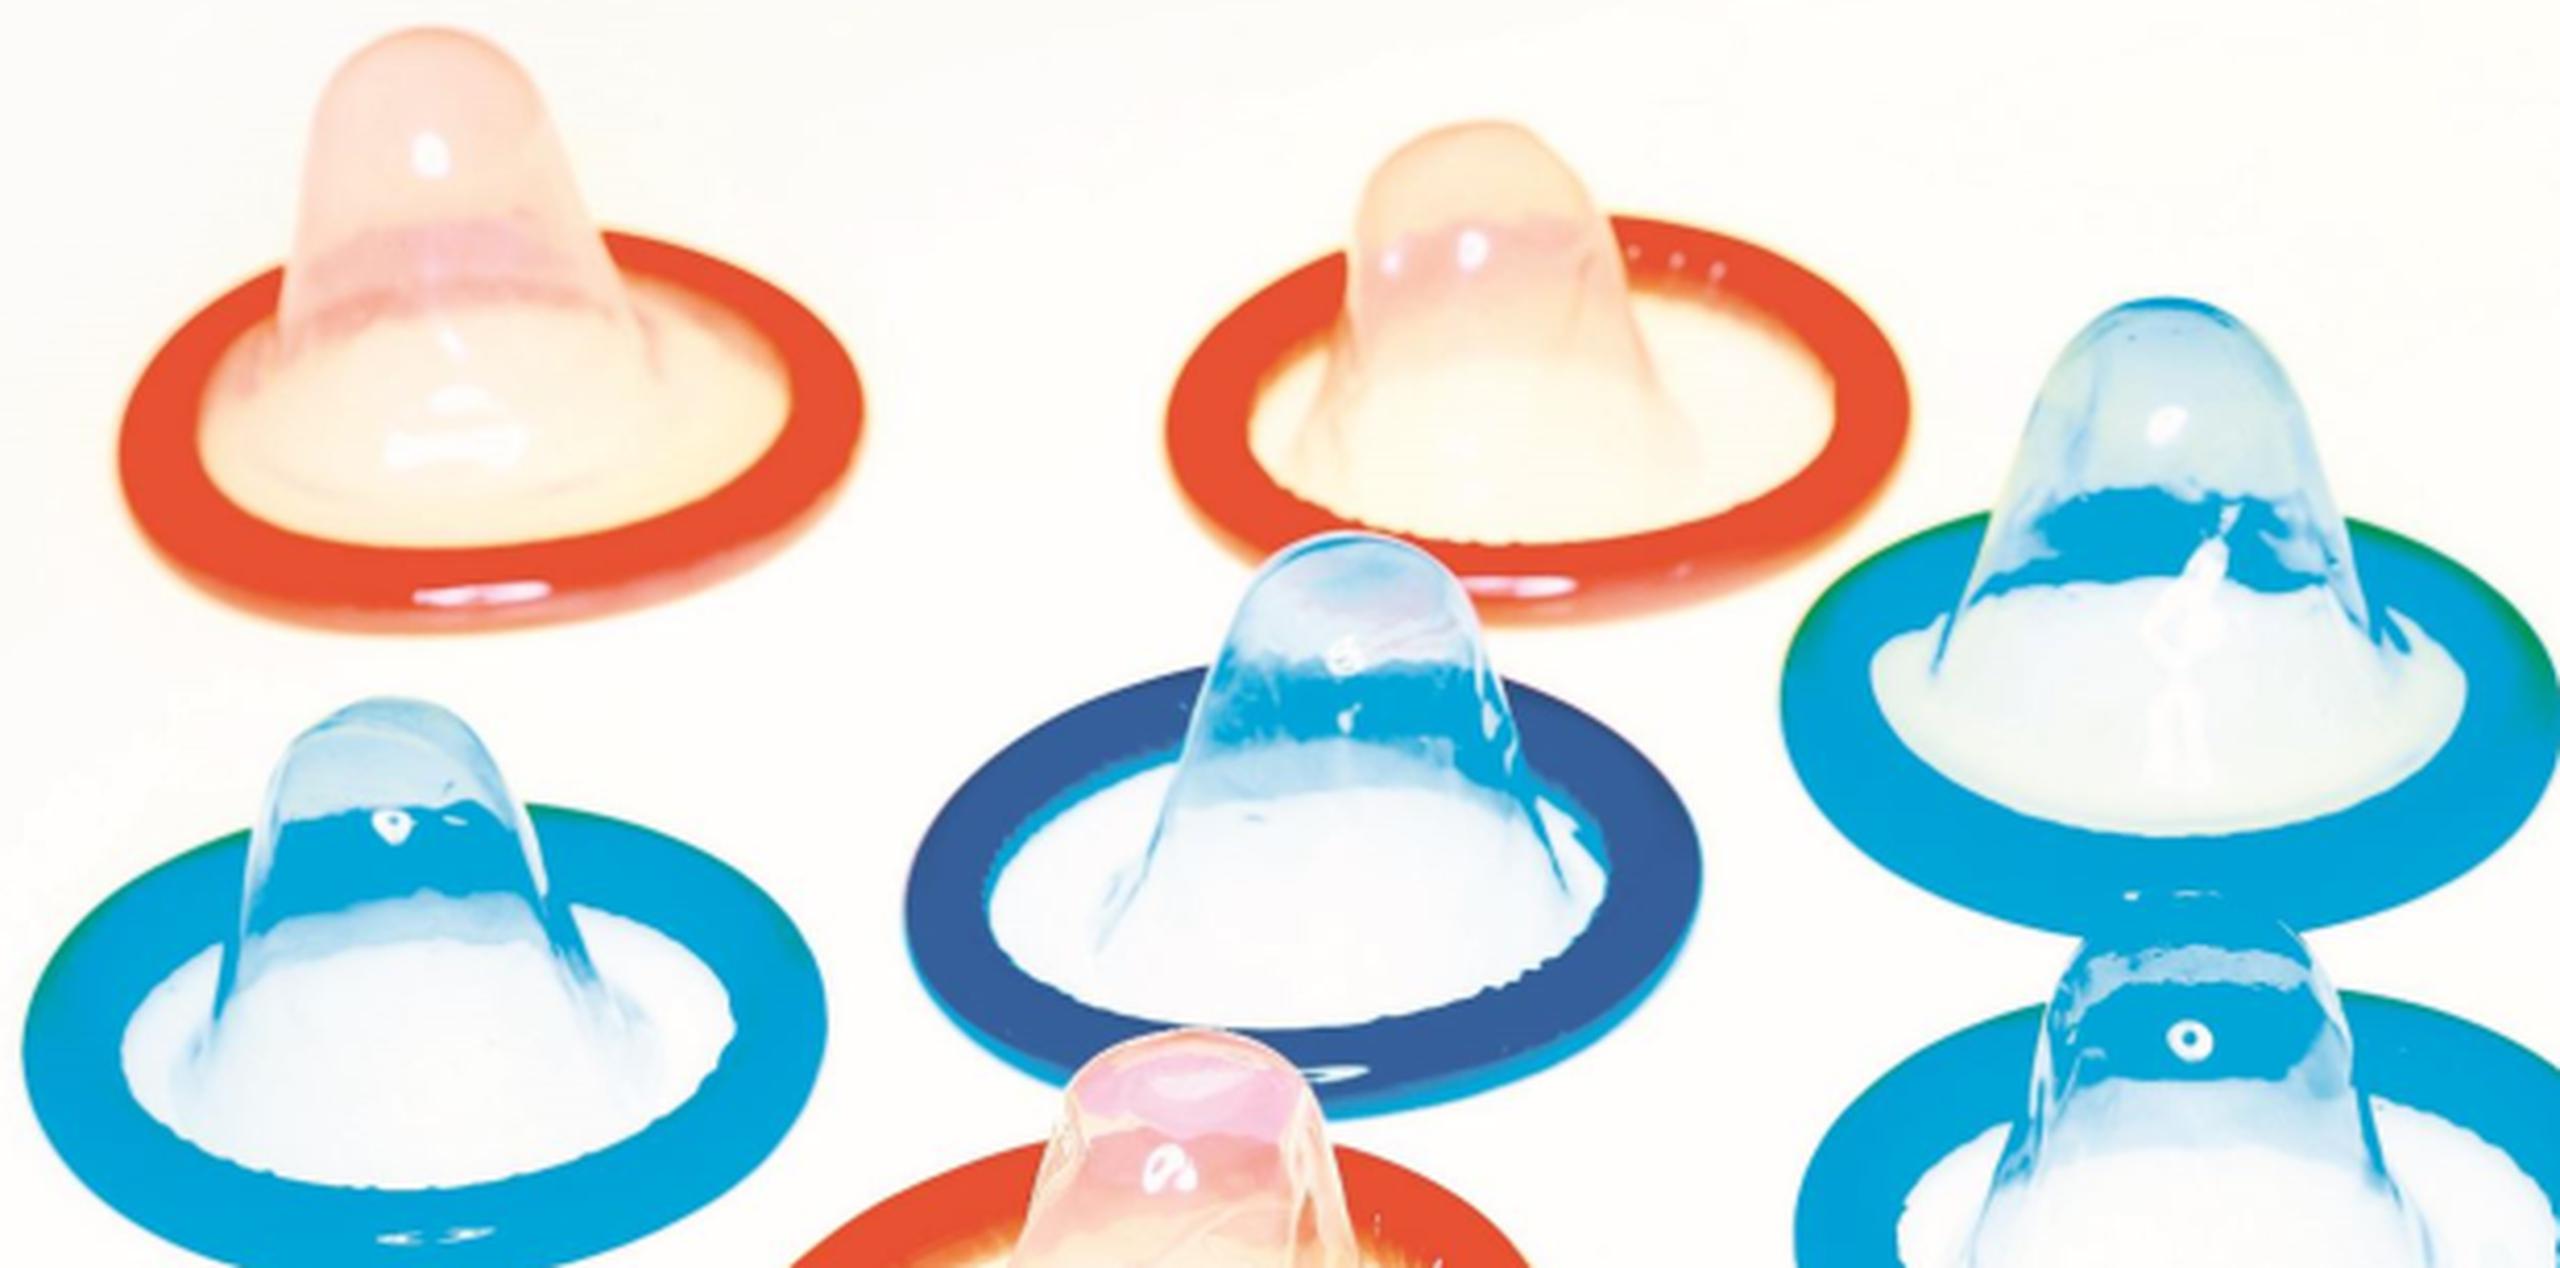 Iván Ortiz, portavoz de ICE, indicó que se trata de “condones falsos”, o que no proveen garantía de que impidan la transmisión de enfermedades sexuales o la reproducción. (Archivo)